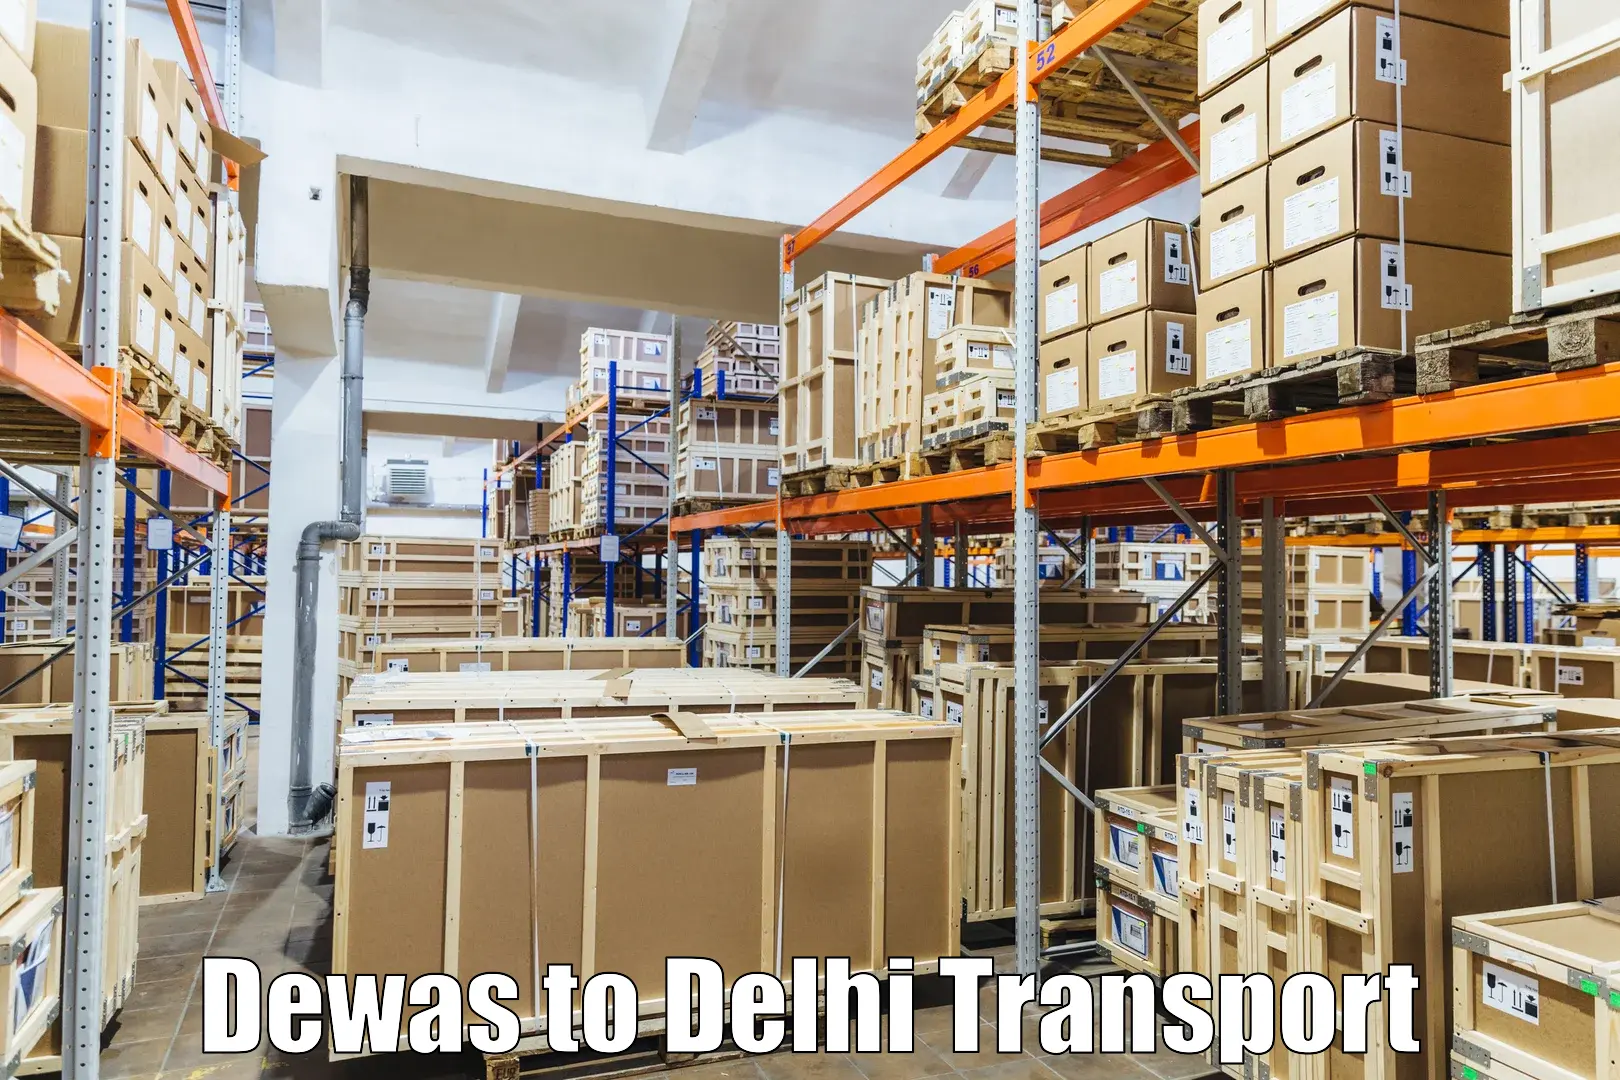 Online transport booking Dewas to Indraprastha